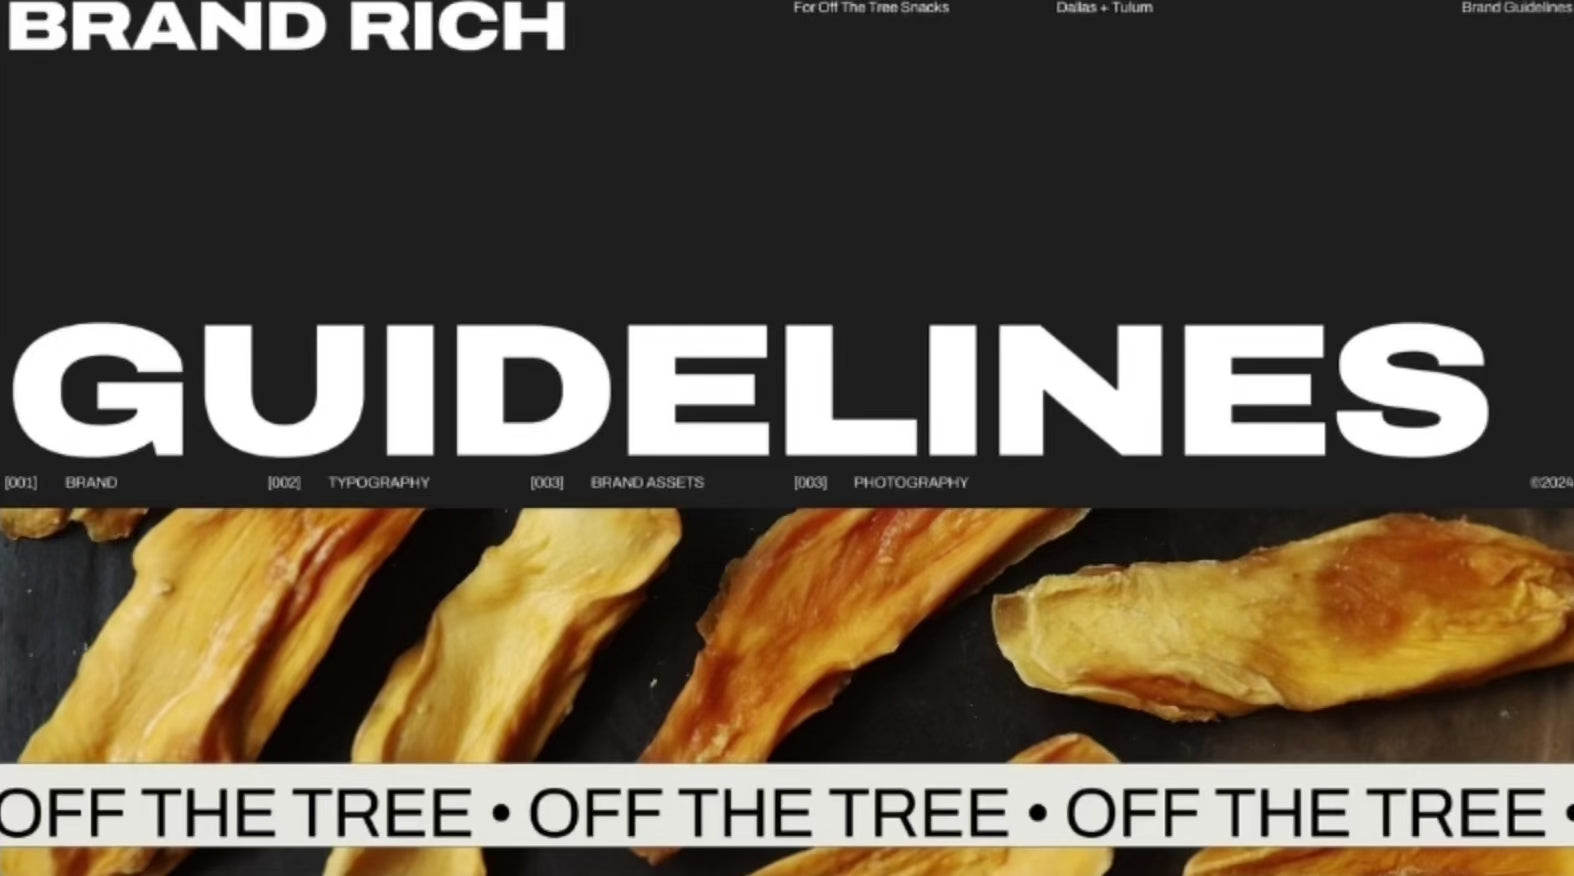 Off the Tree Snacks branding guidelines sneak peak.